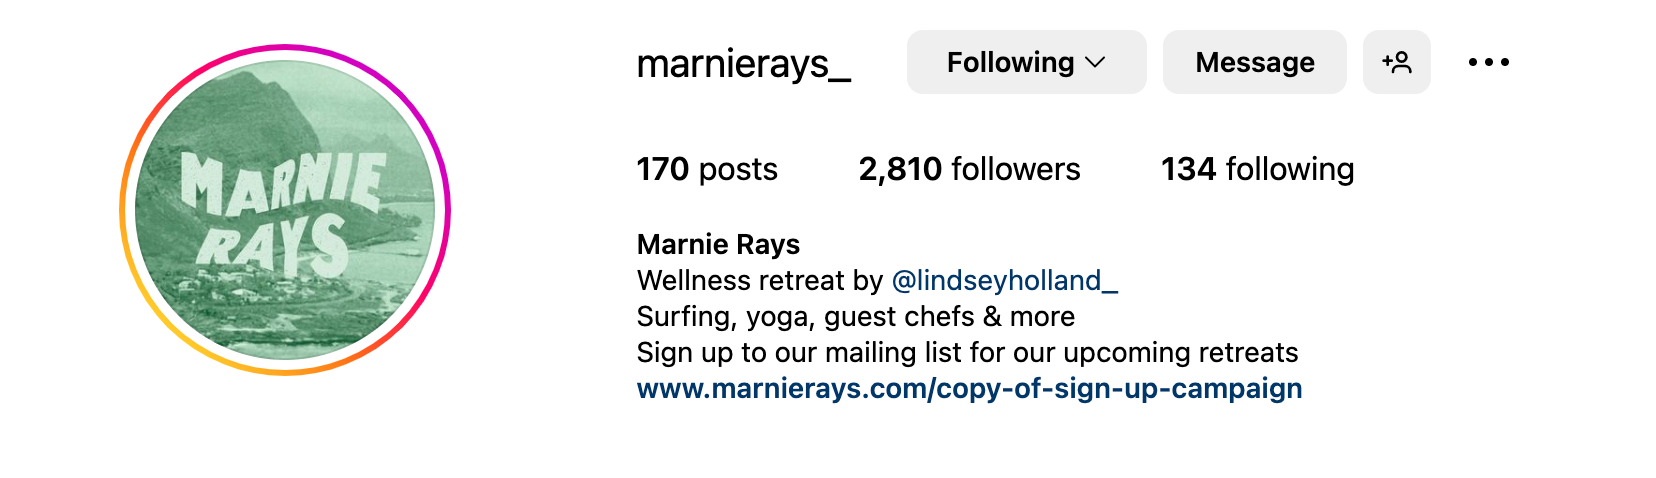 Instagram bio ideas - Marnie Rays